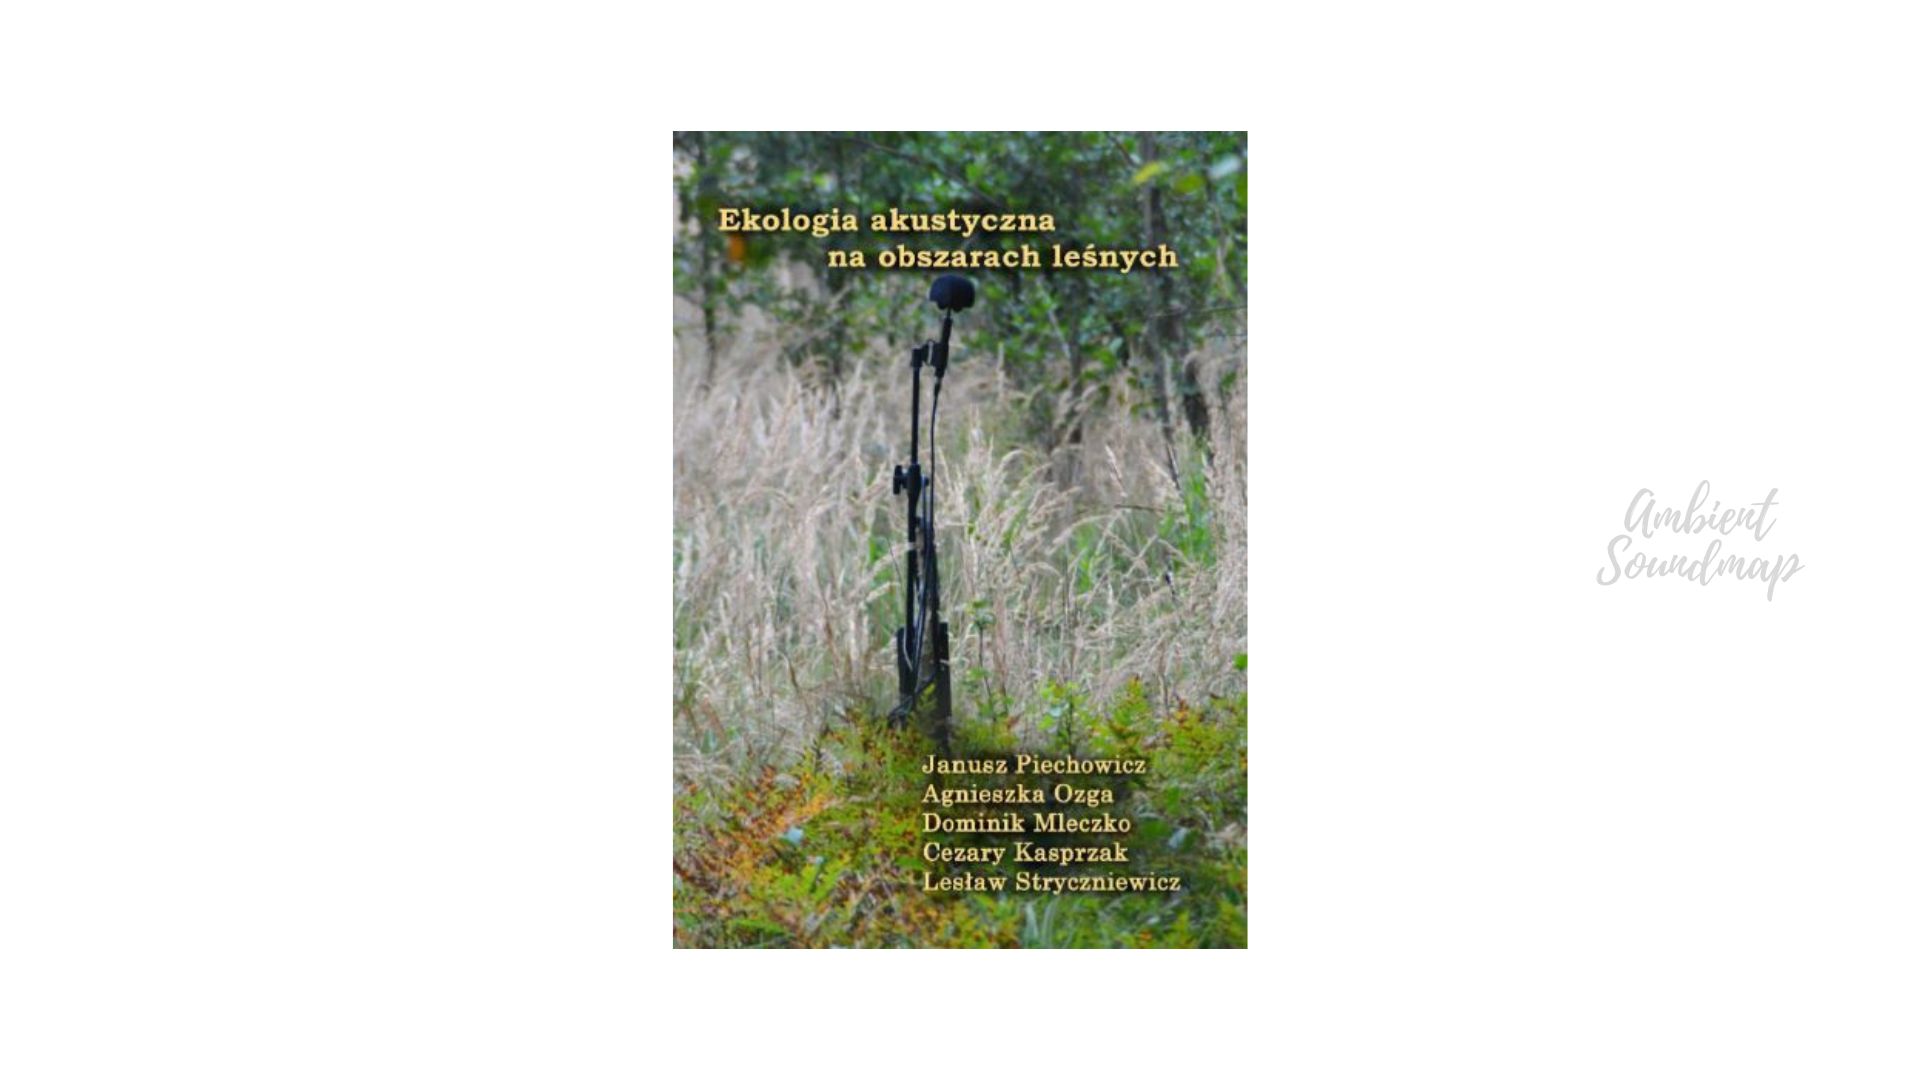 Ekologia akustyczna na obszarach leśnych - książka 2015